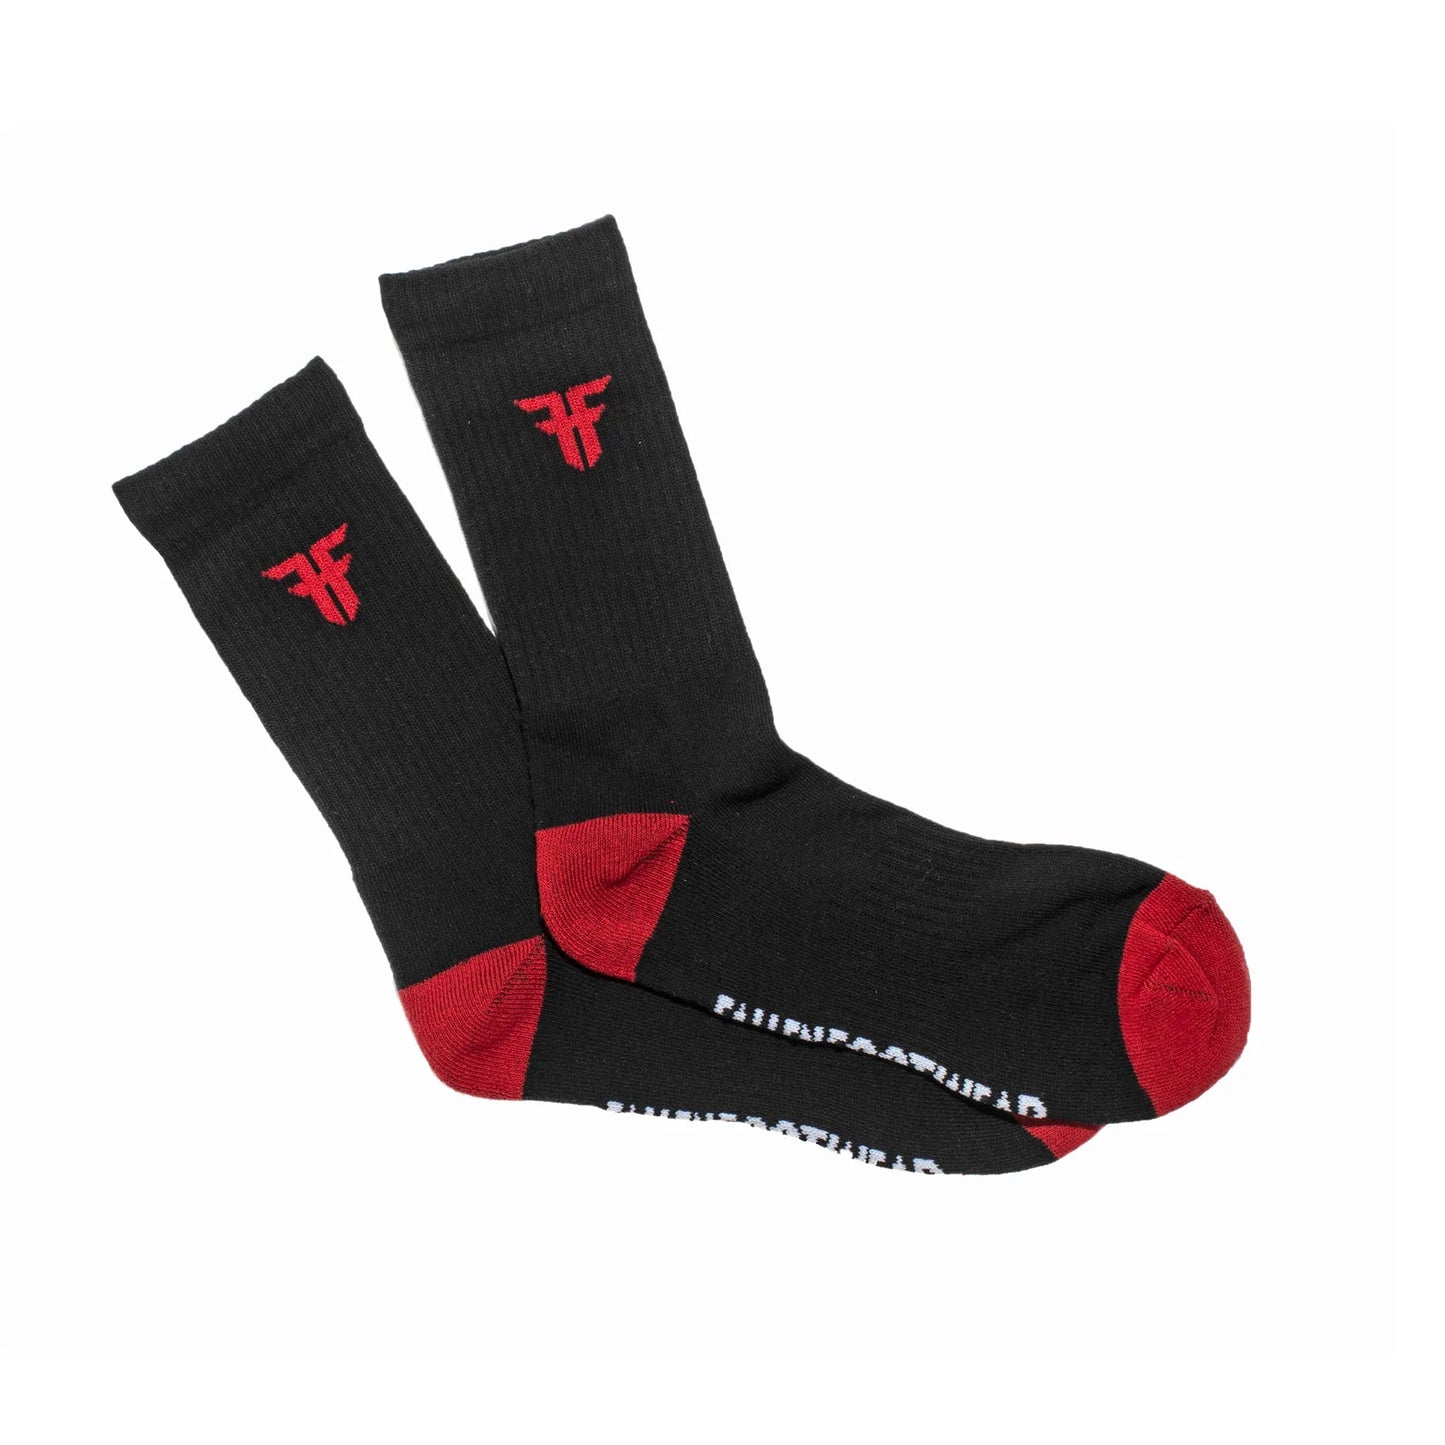 Fallen - Trademark Socks